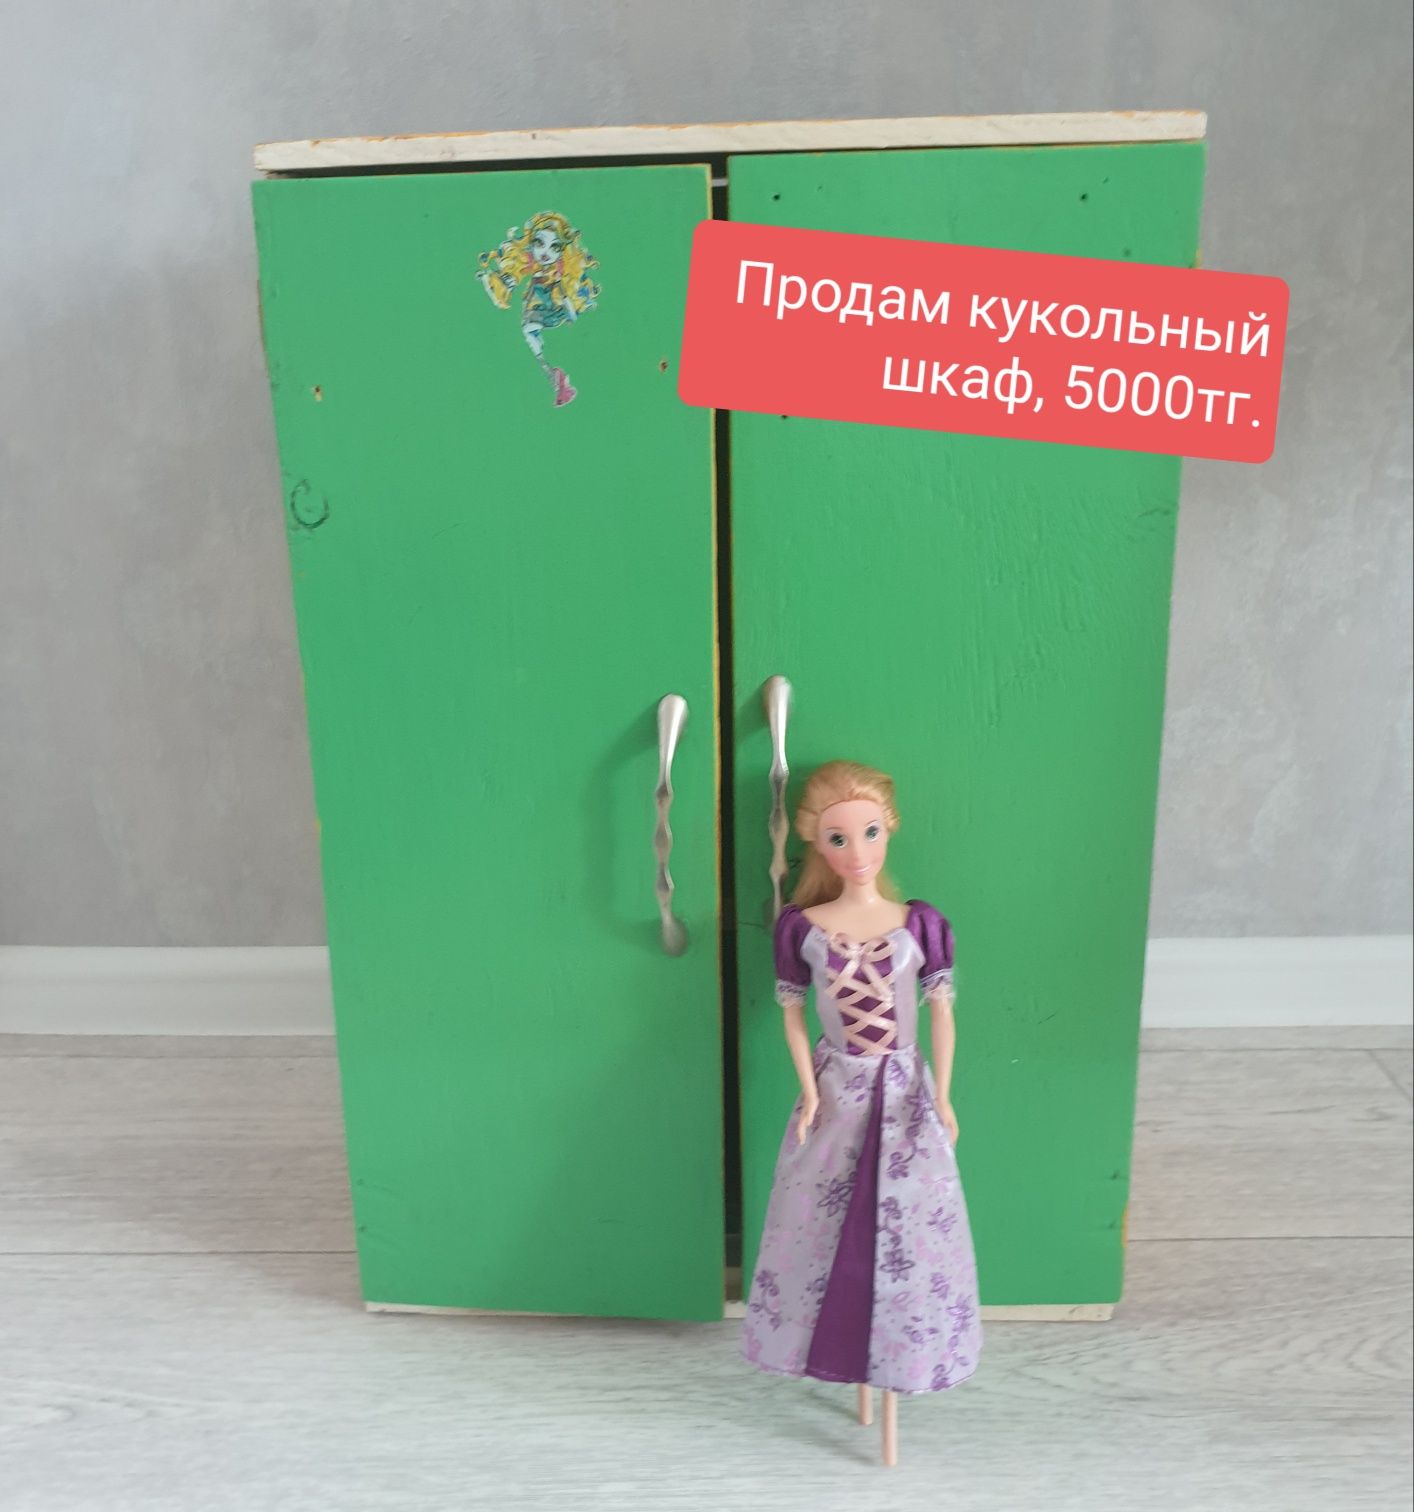 Продам кукольный шкаф